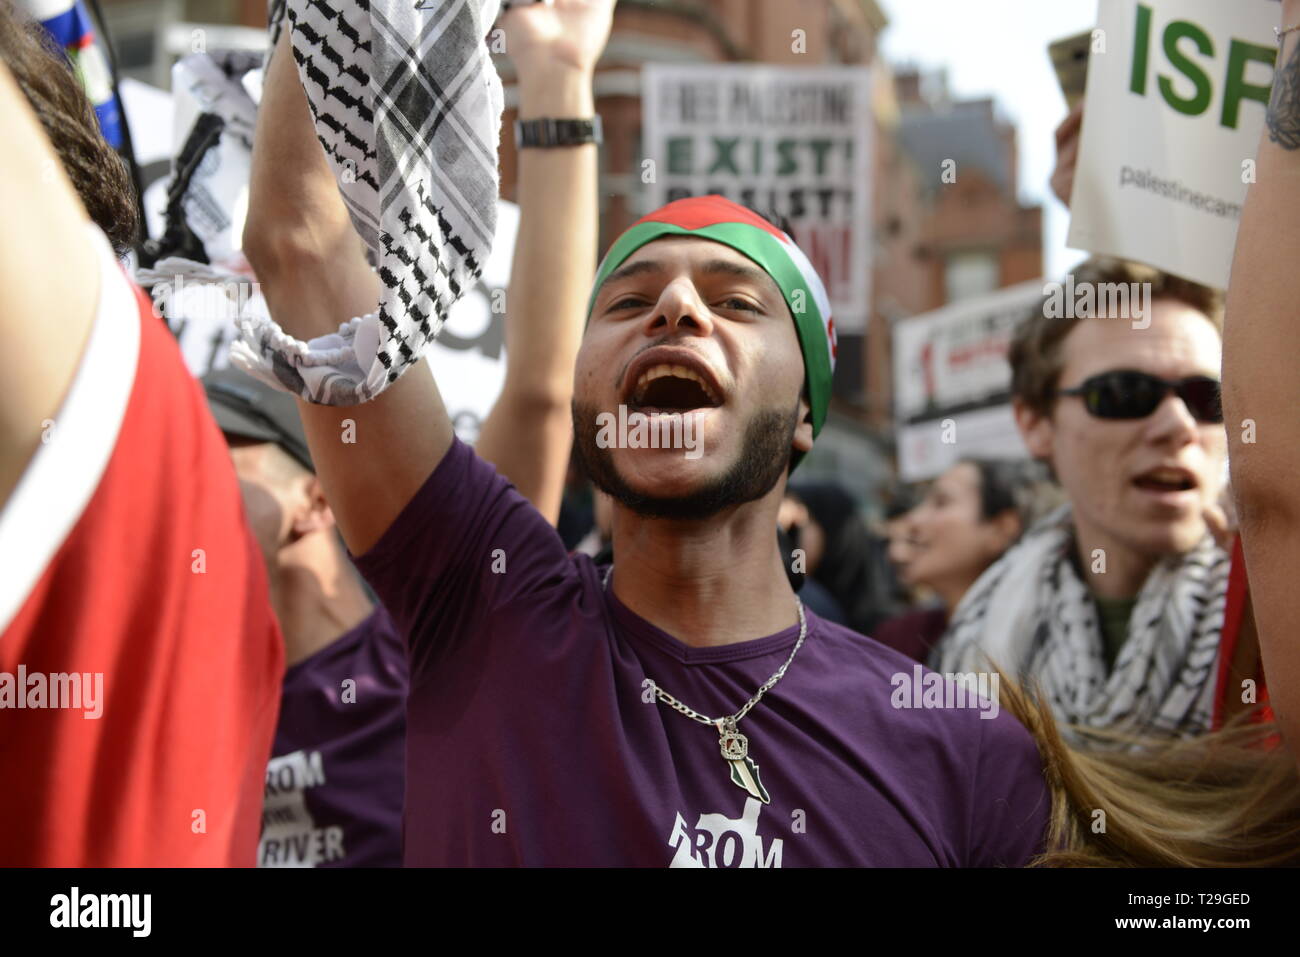 Un manifestante è visto cantando slogan durante l'esistere, Resist, ritorno Rally per la Palestina in Londra. La gente si riunisce al di fuori dell'ambasciata Israeliana a Londra per dimostrare contro il governo israeliano e di esigere il rispetto per i palestinesi' diritti fondamentali di esistere, resistere e ritorno. I palestinesi stanno chiamando per protesta globale per sostenere il loro diritto di tornare nei loro villaggi. Rally è stato organizzato dalla Palestina Campagna di solidarietà, arrestare la coalizione bellica, Forum palestinese in Gran Bretagna, Amici di al-Aqsa e associazione musulmana della Gran Bretagna. Foto Stock